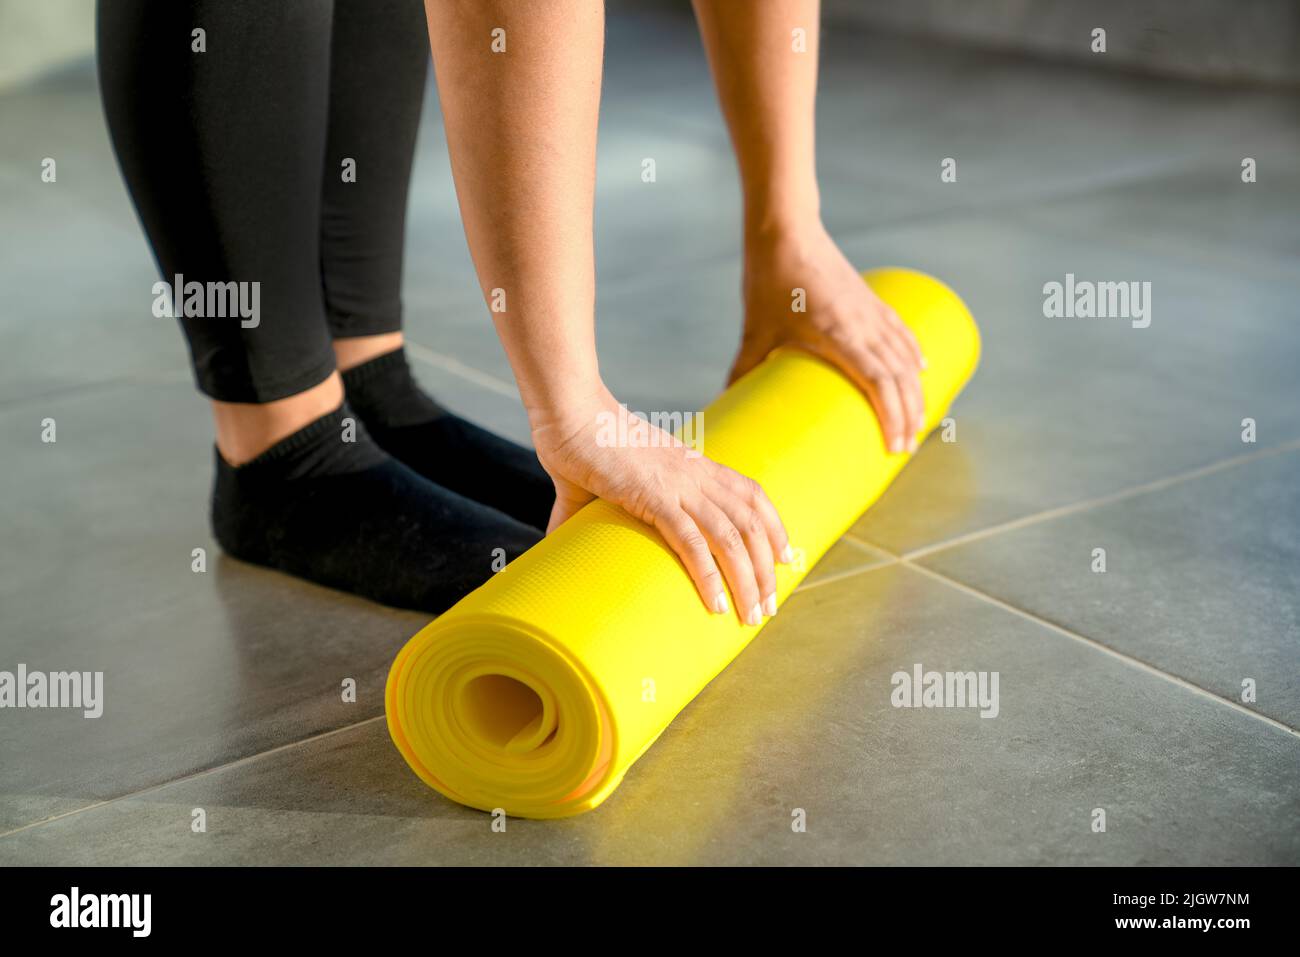 Frau bereitet sich darauf vor, die gelbe Rolle der Sportmatte für die Fitness auszupacken. Die Hände liegen aus nächster Nähe auf der Matte. Konzept eines gesunden Lebensstils. Stockfoto